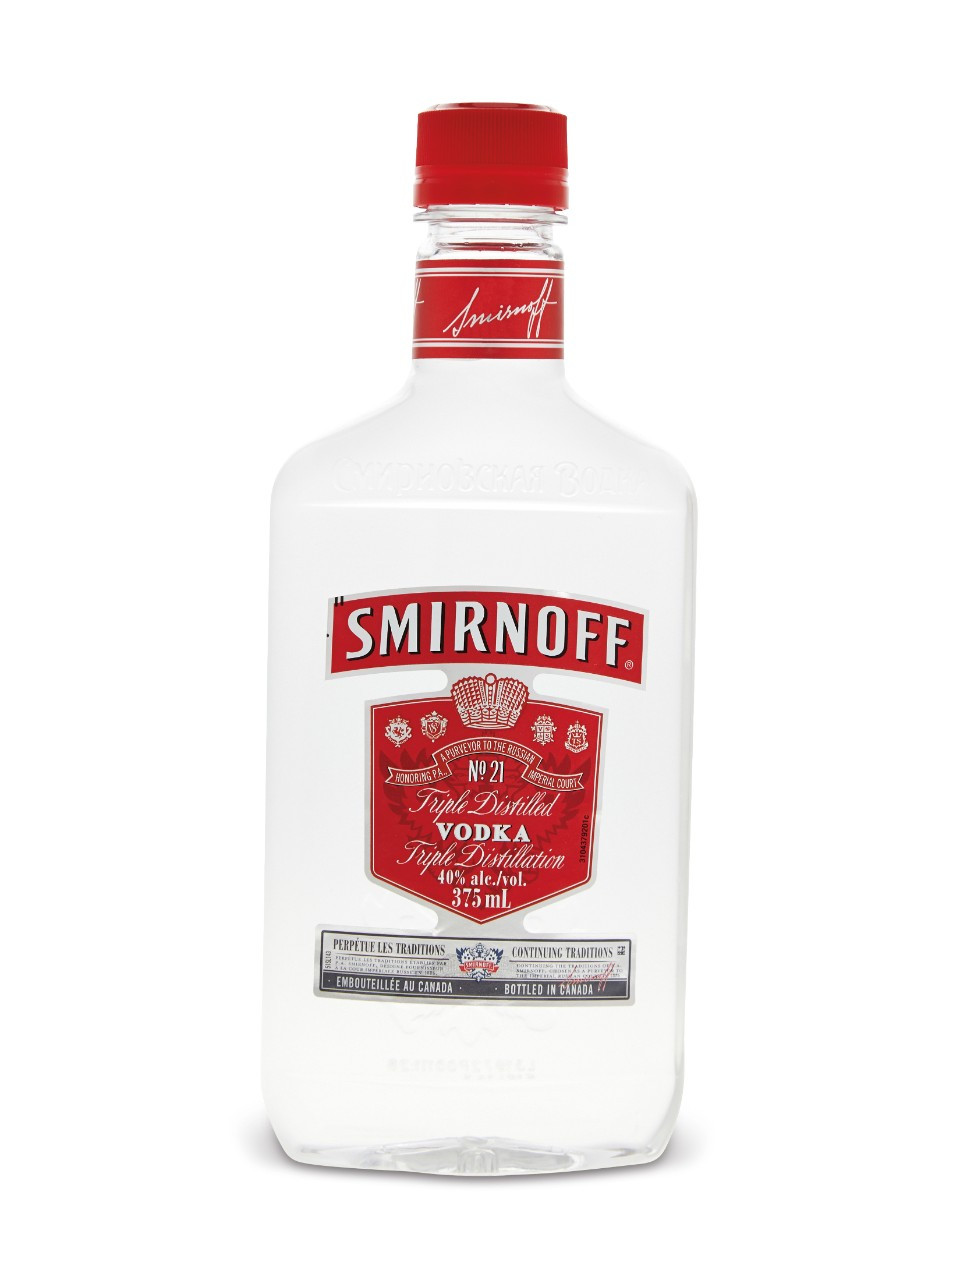 Smirnoff vodka (pet)